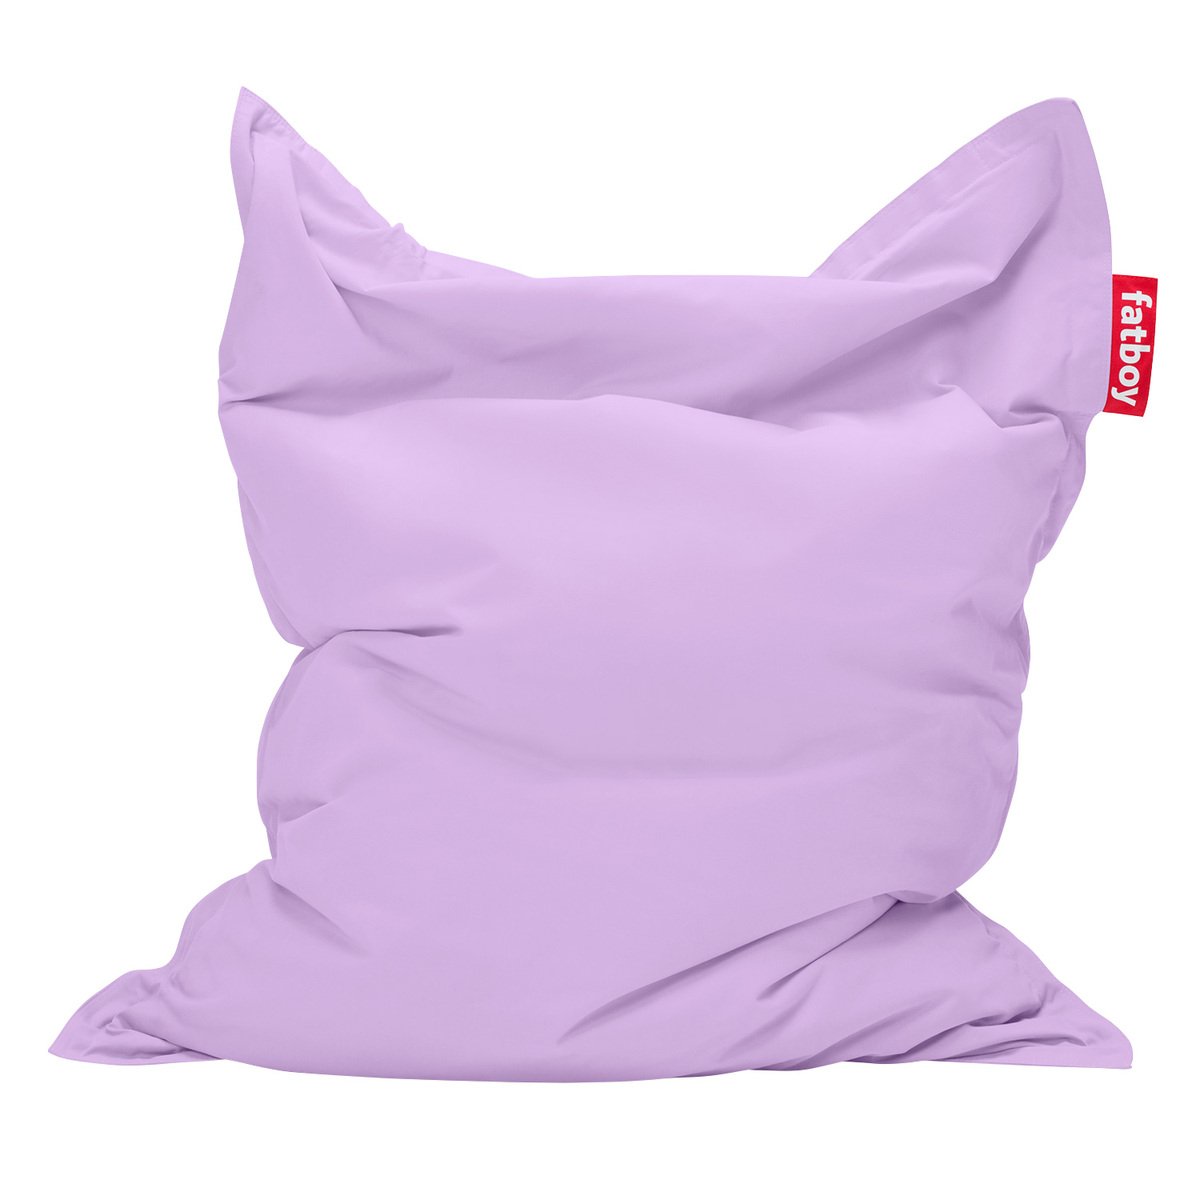 Fatboy Original Stonewashed bean bag, lilac | Finnish Design Shop NL